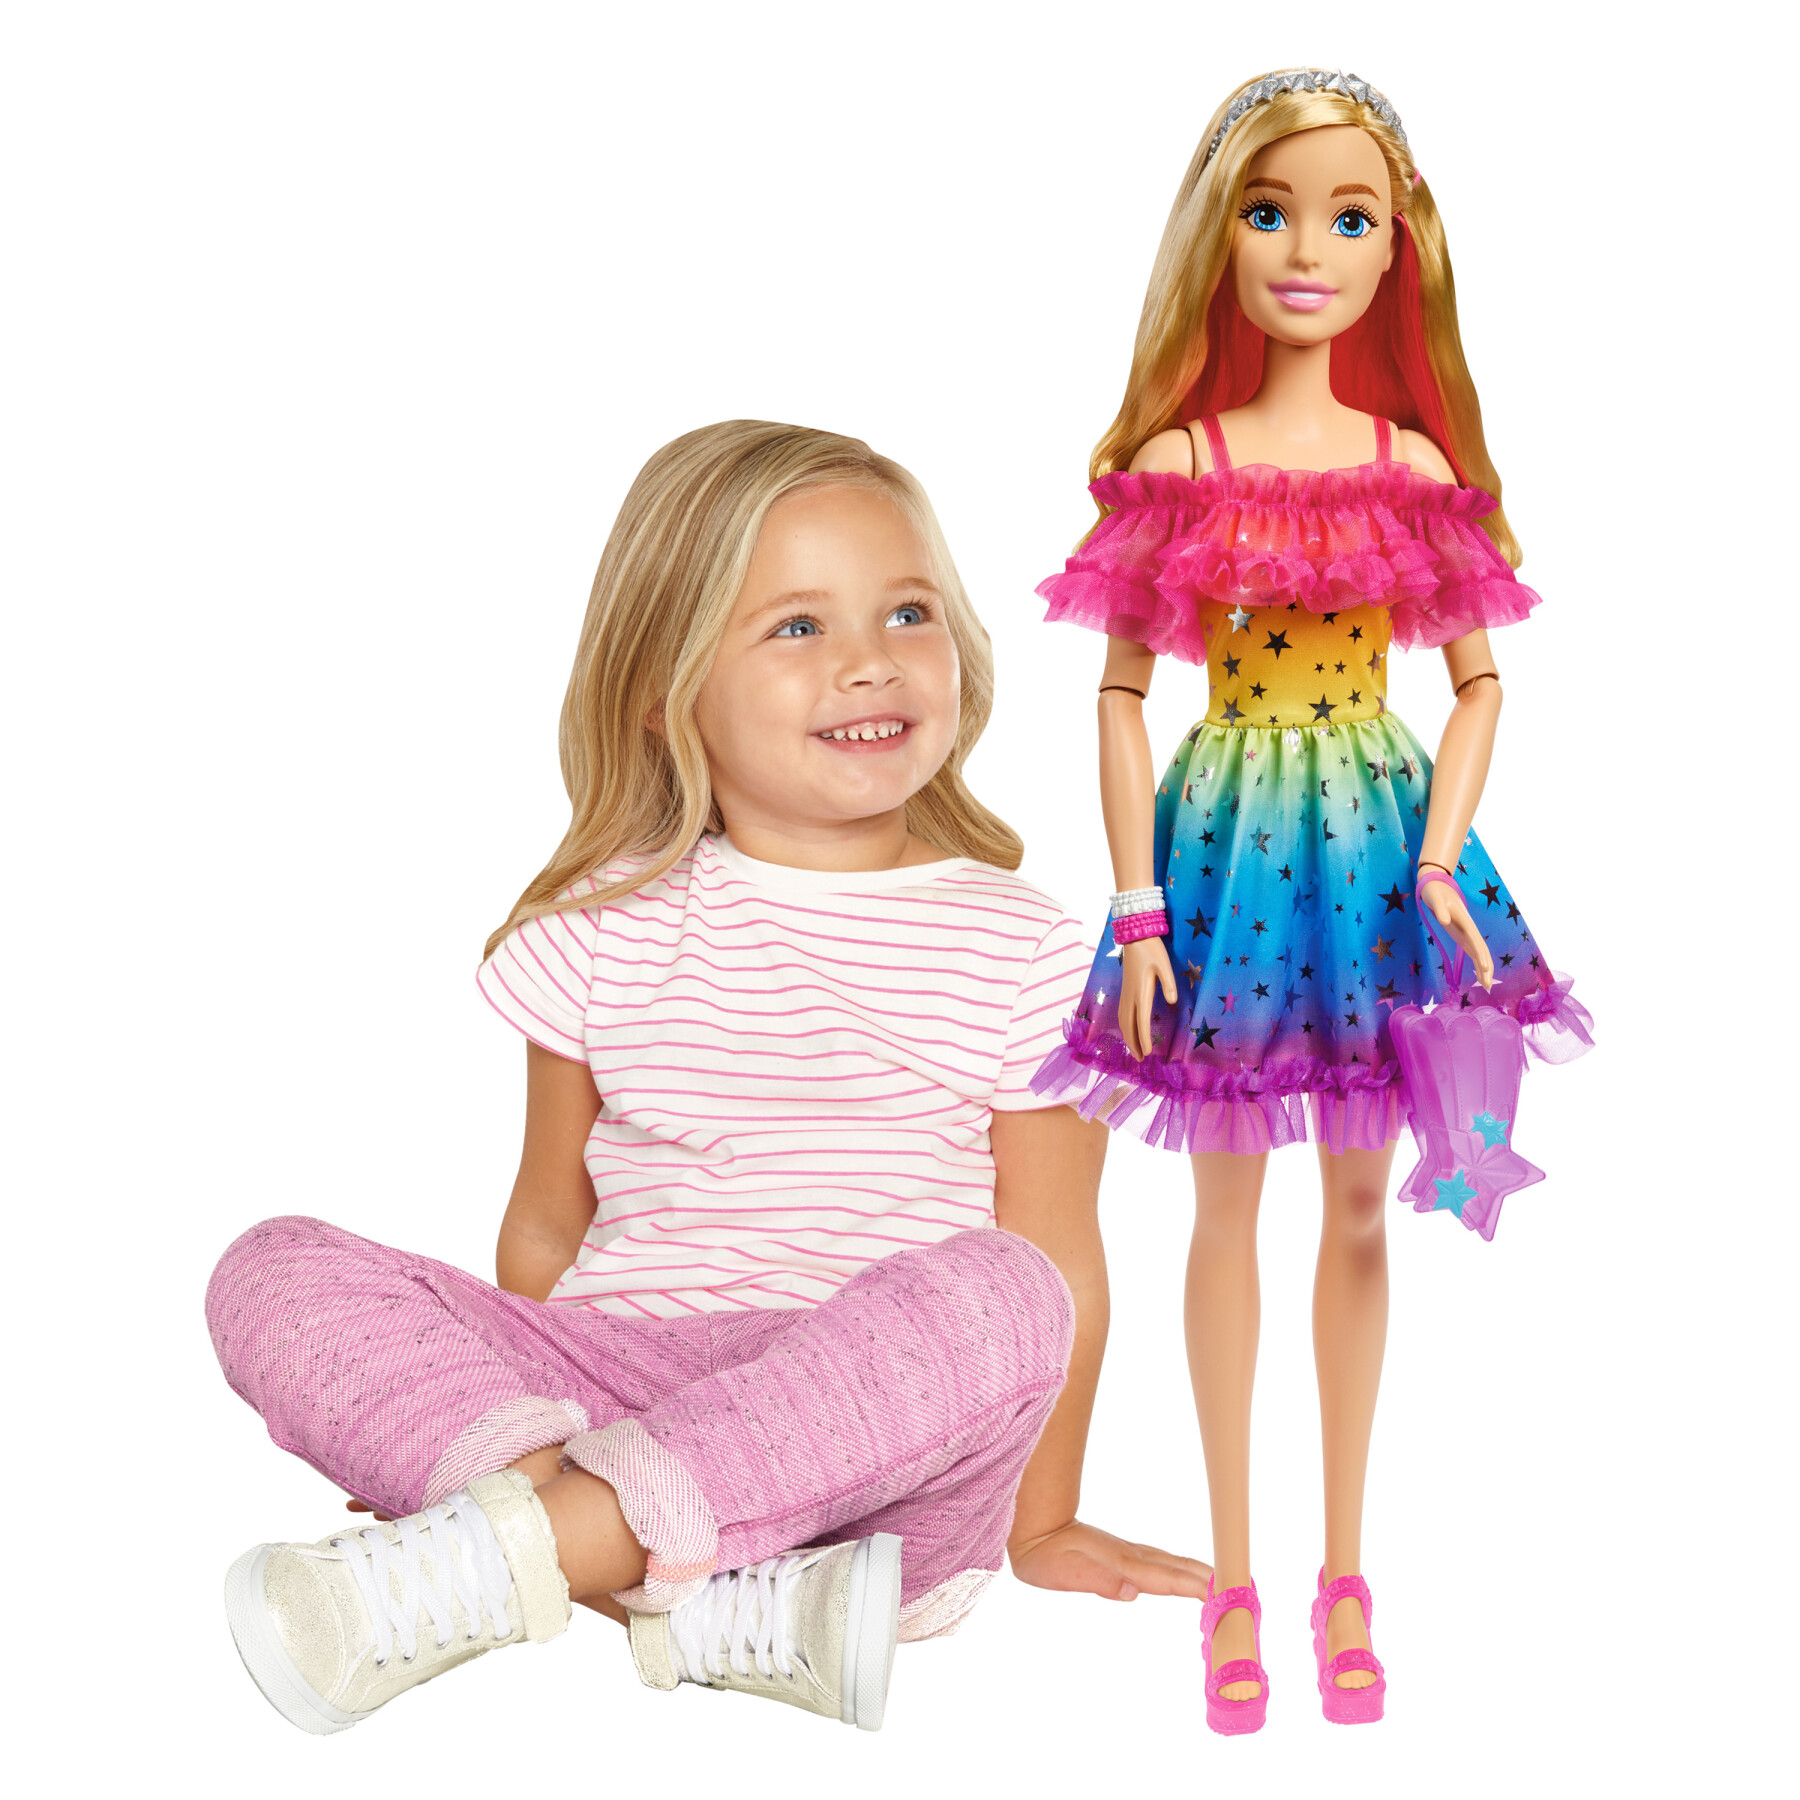 Bambola barbie alta 71 cm con abito arcobaleno e accessori moda